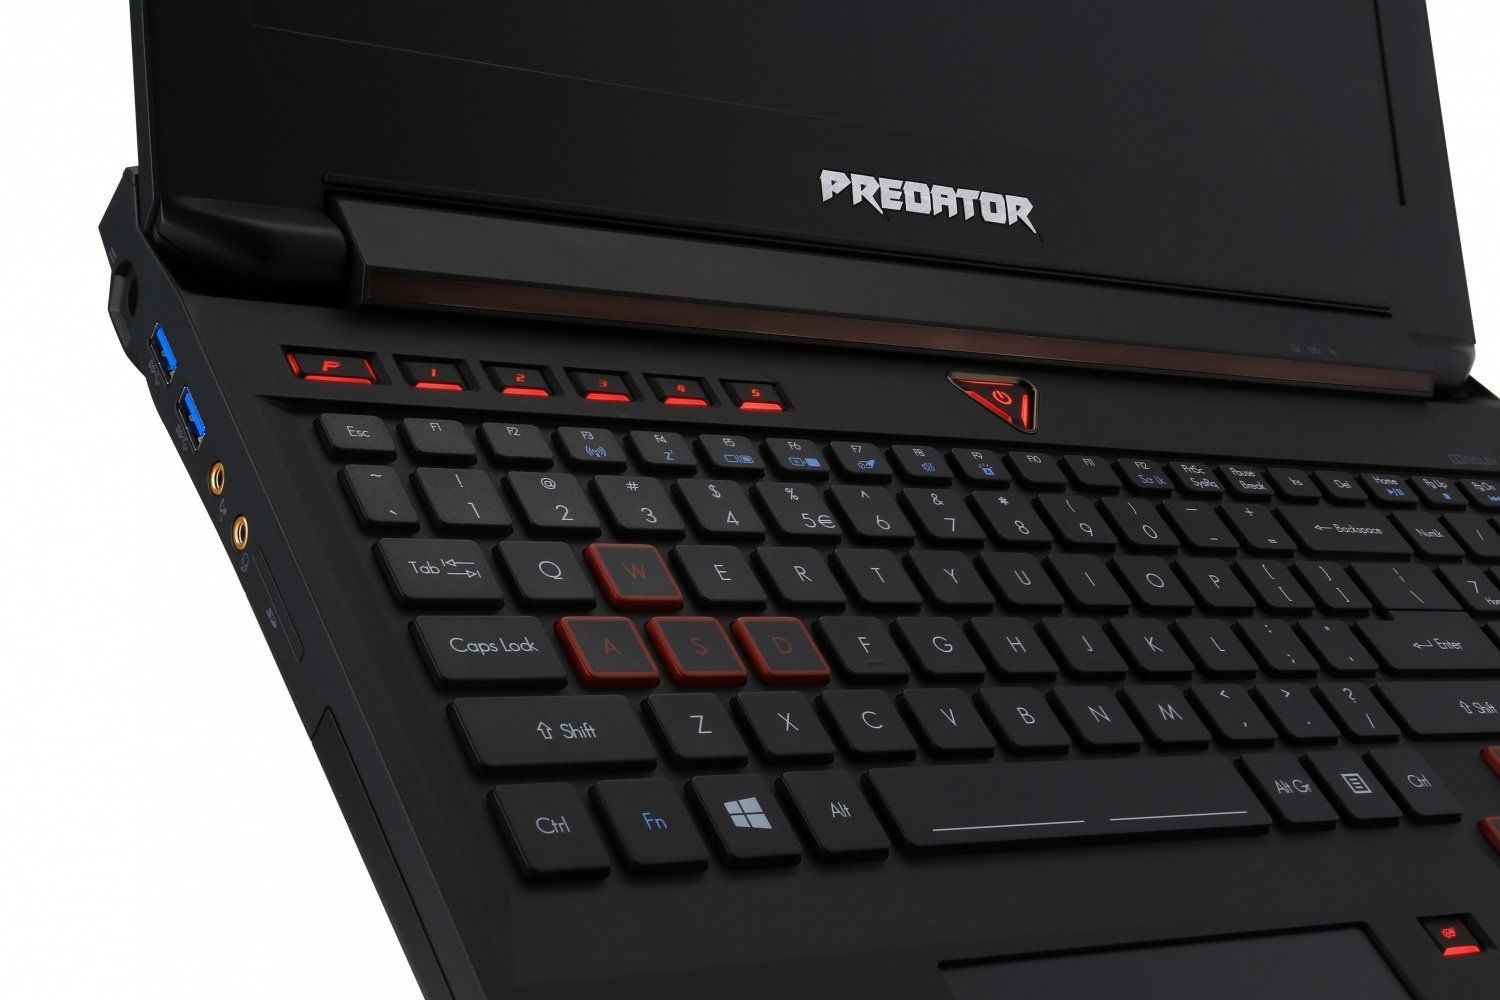 Купить Ноутбук Acer Predator 15 G9-591